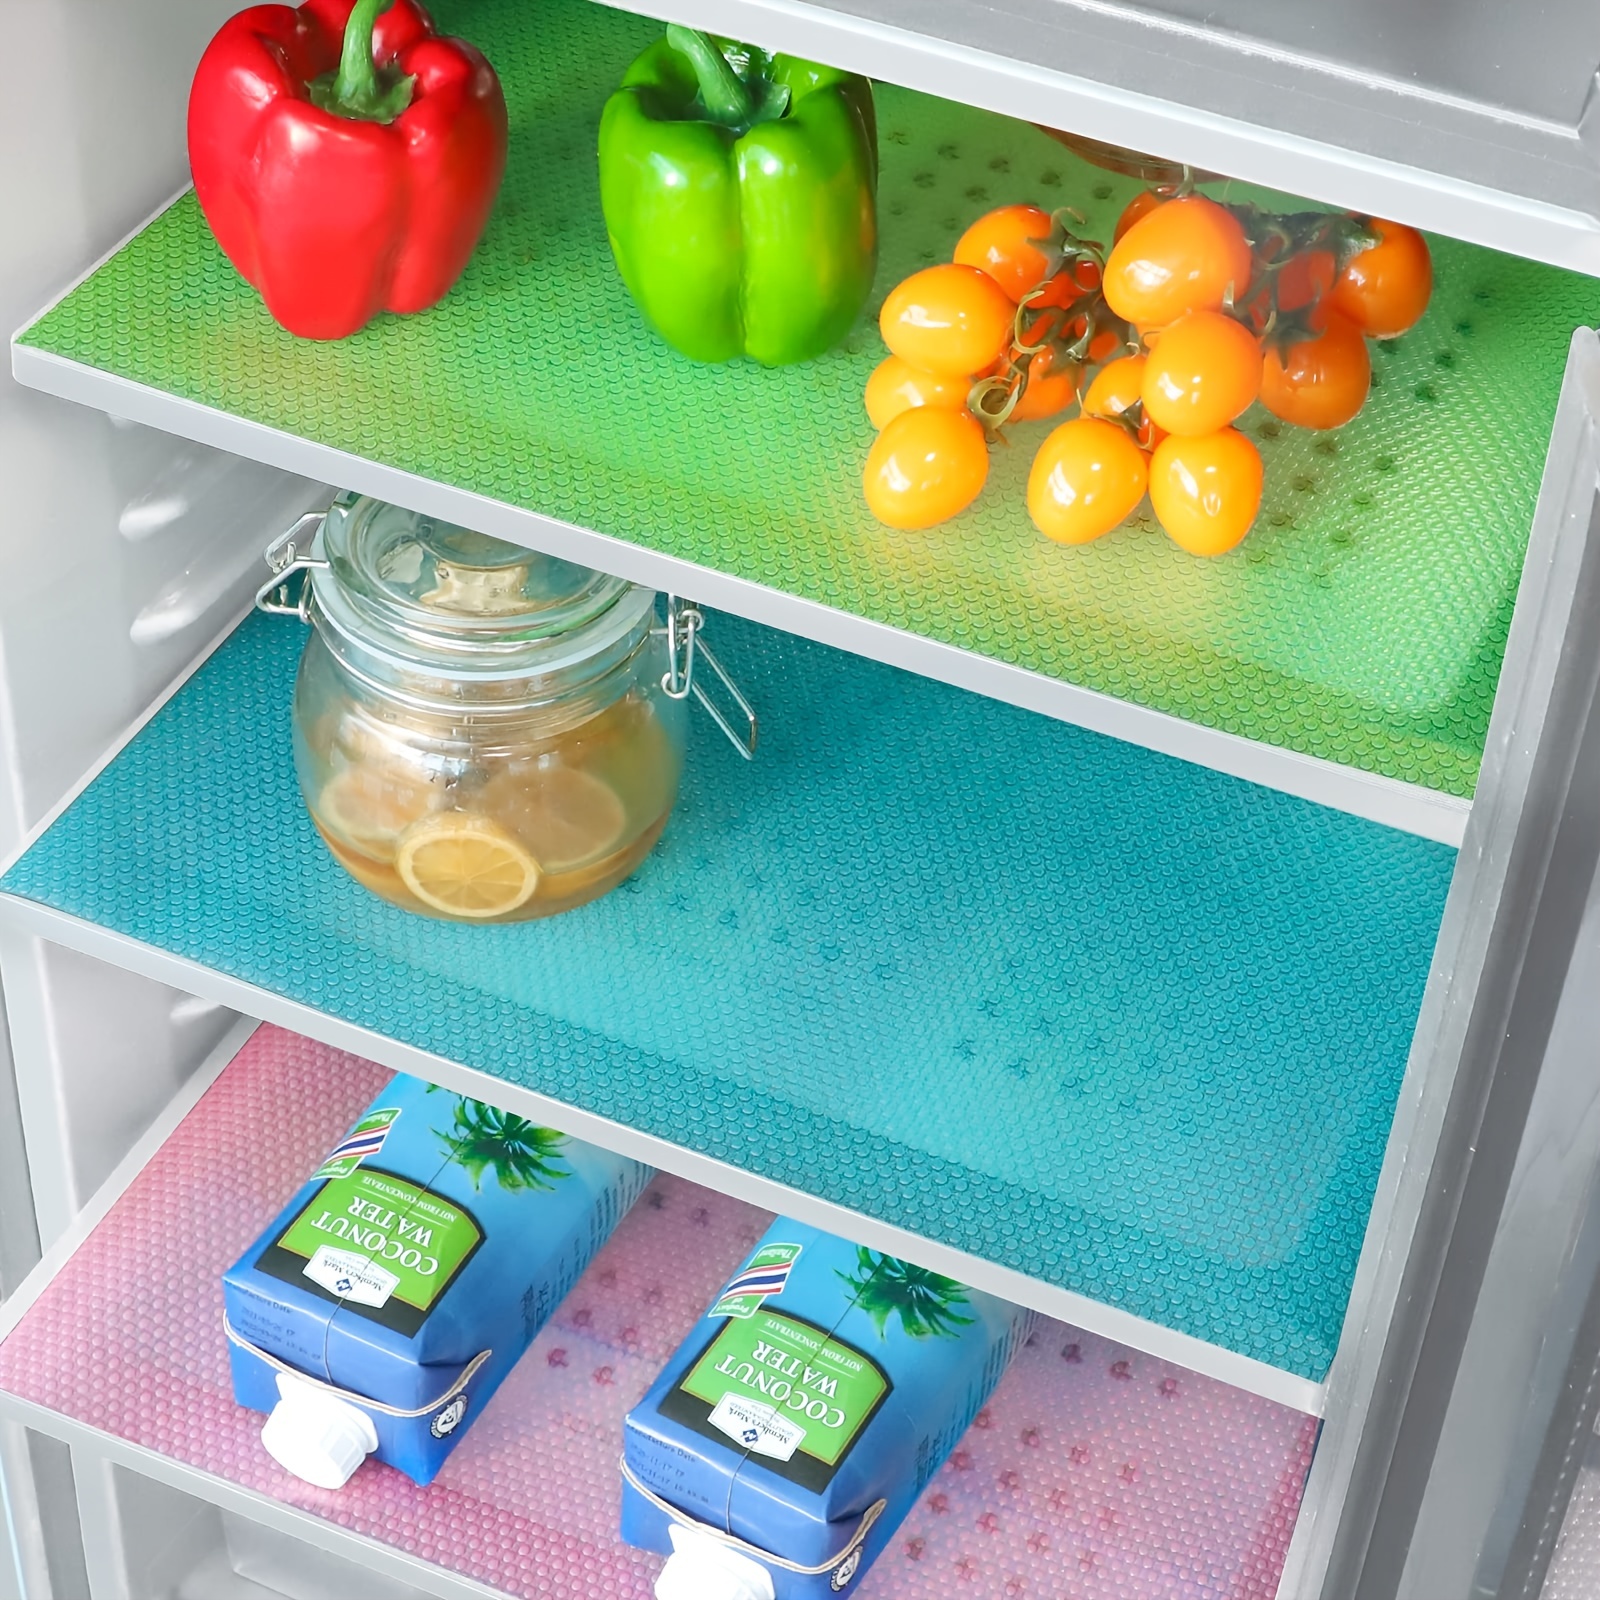 Tupperware Tamara - ¡Un congelador organizado es un congelador feliz! 😁 La  𝐋Í𝐍𝐄𝐀 𝐃𝐄 𝐂𝐎𝐍𝐆𝐄𝐋𝐀𝐂𝐈Ó𝐍 garantiza una organización adaptada a  los cajones de tu congelador. Además de ser apilables, los colores de